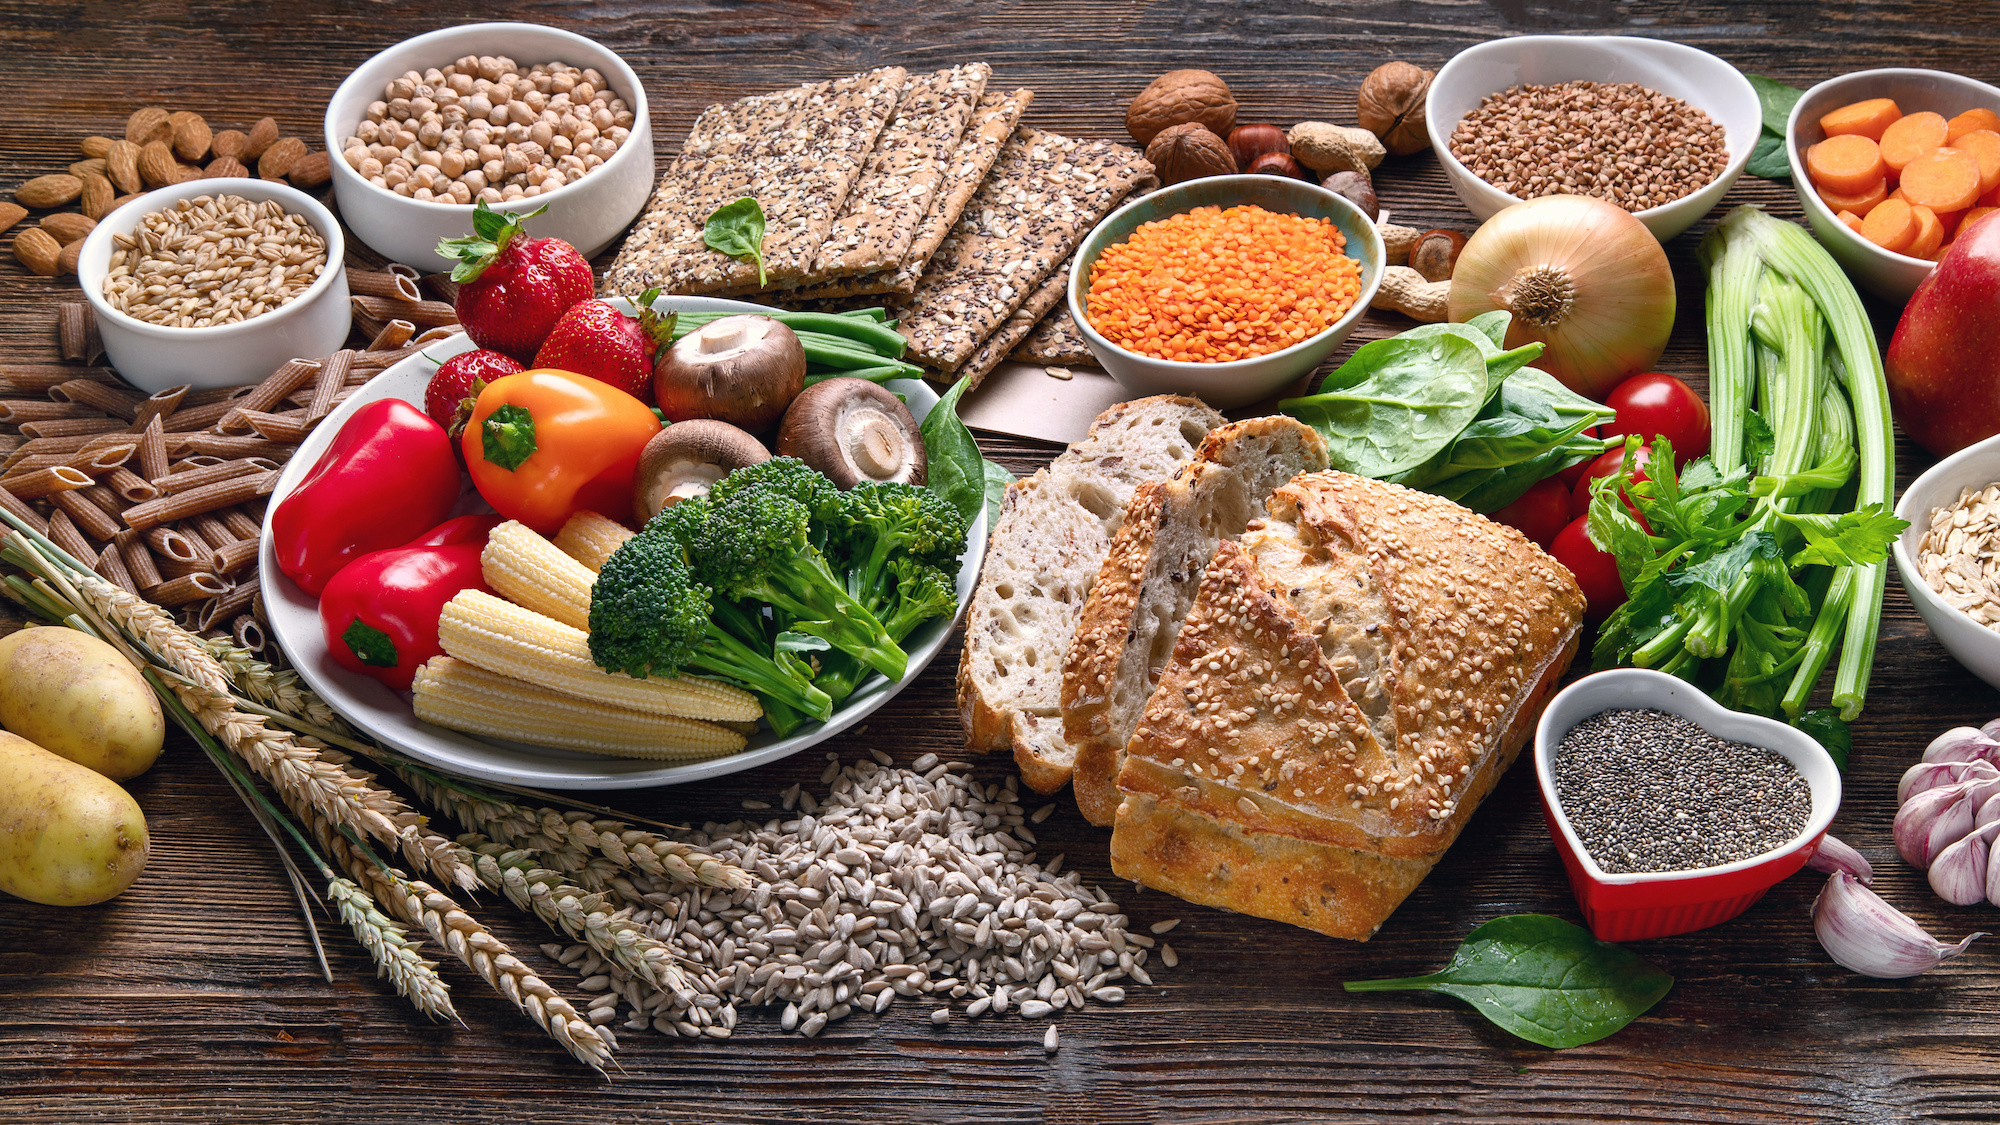 Le régime alimentaire planétaire fait la part belle aux produits d’origine végétale. (Photo: Stock Adobe)